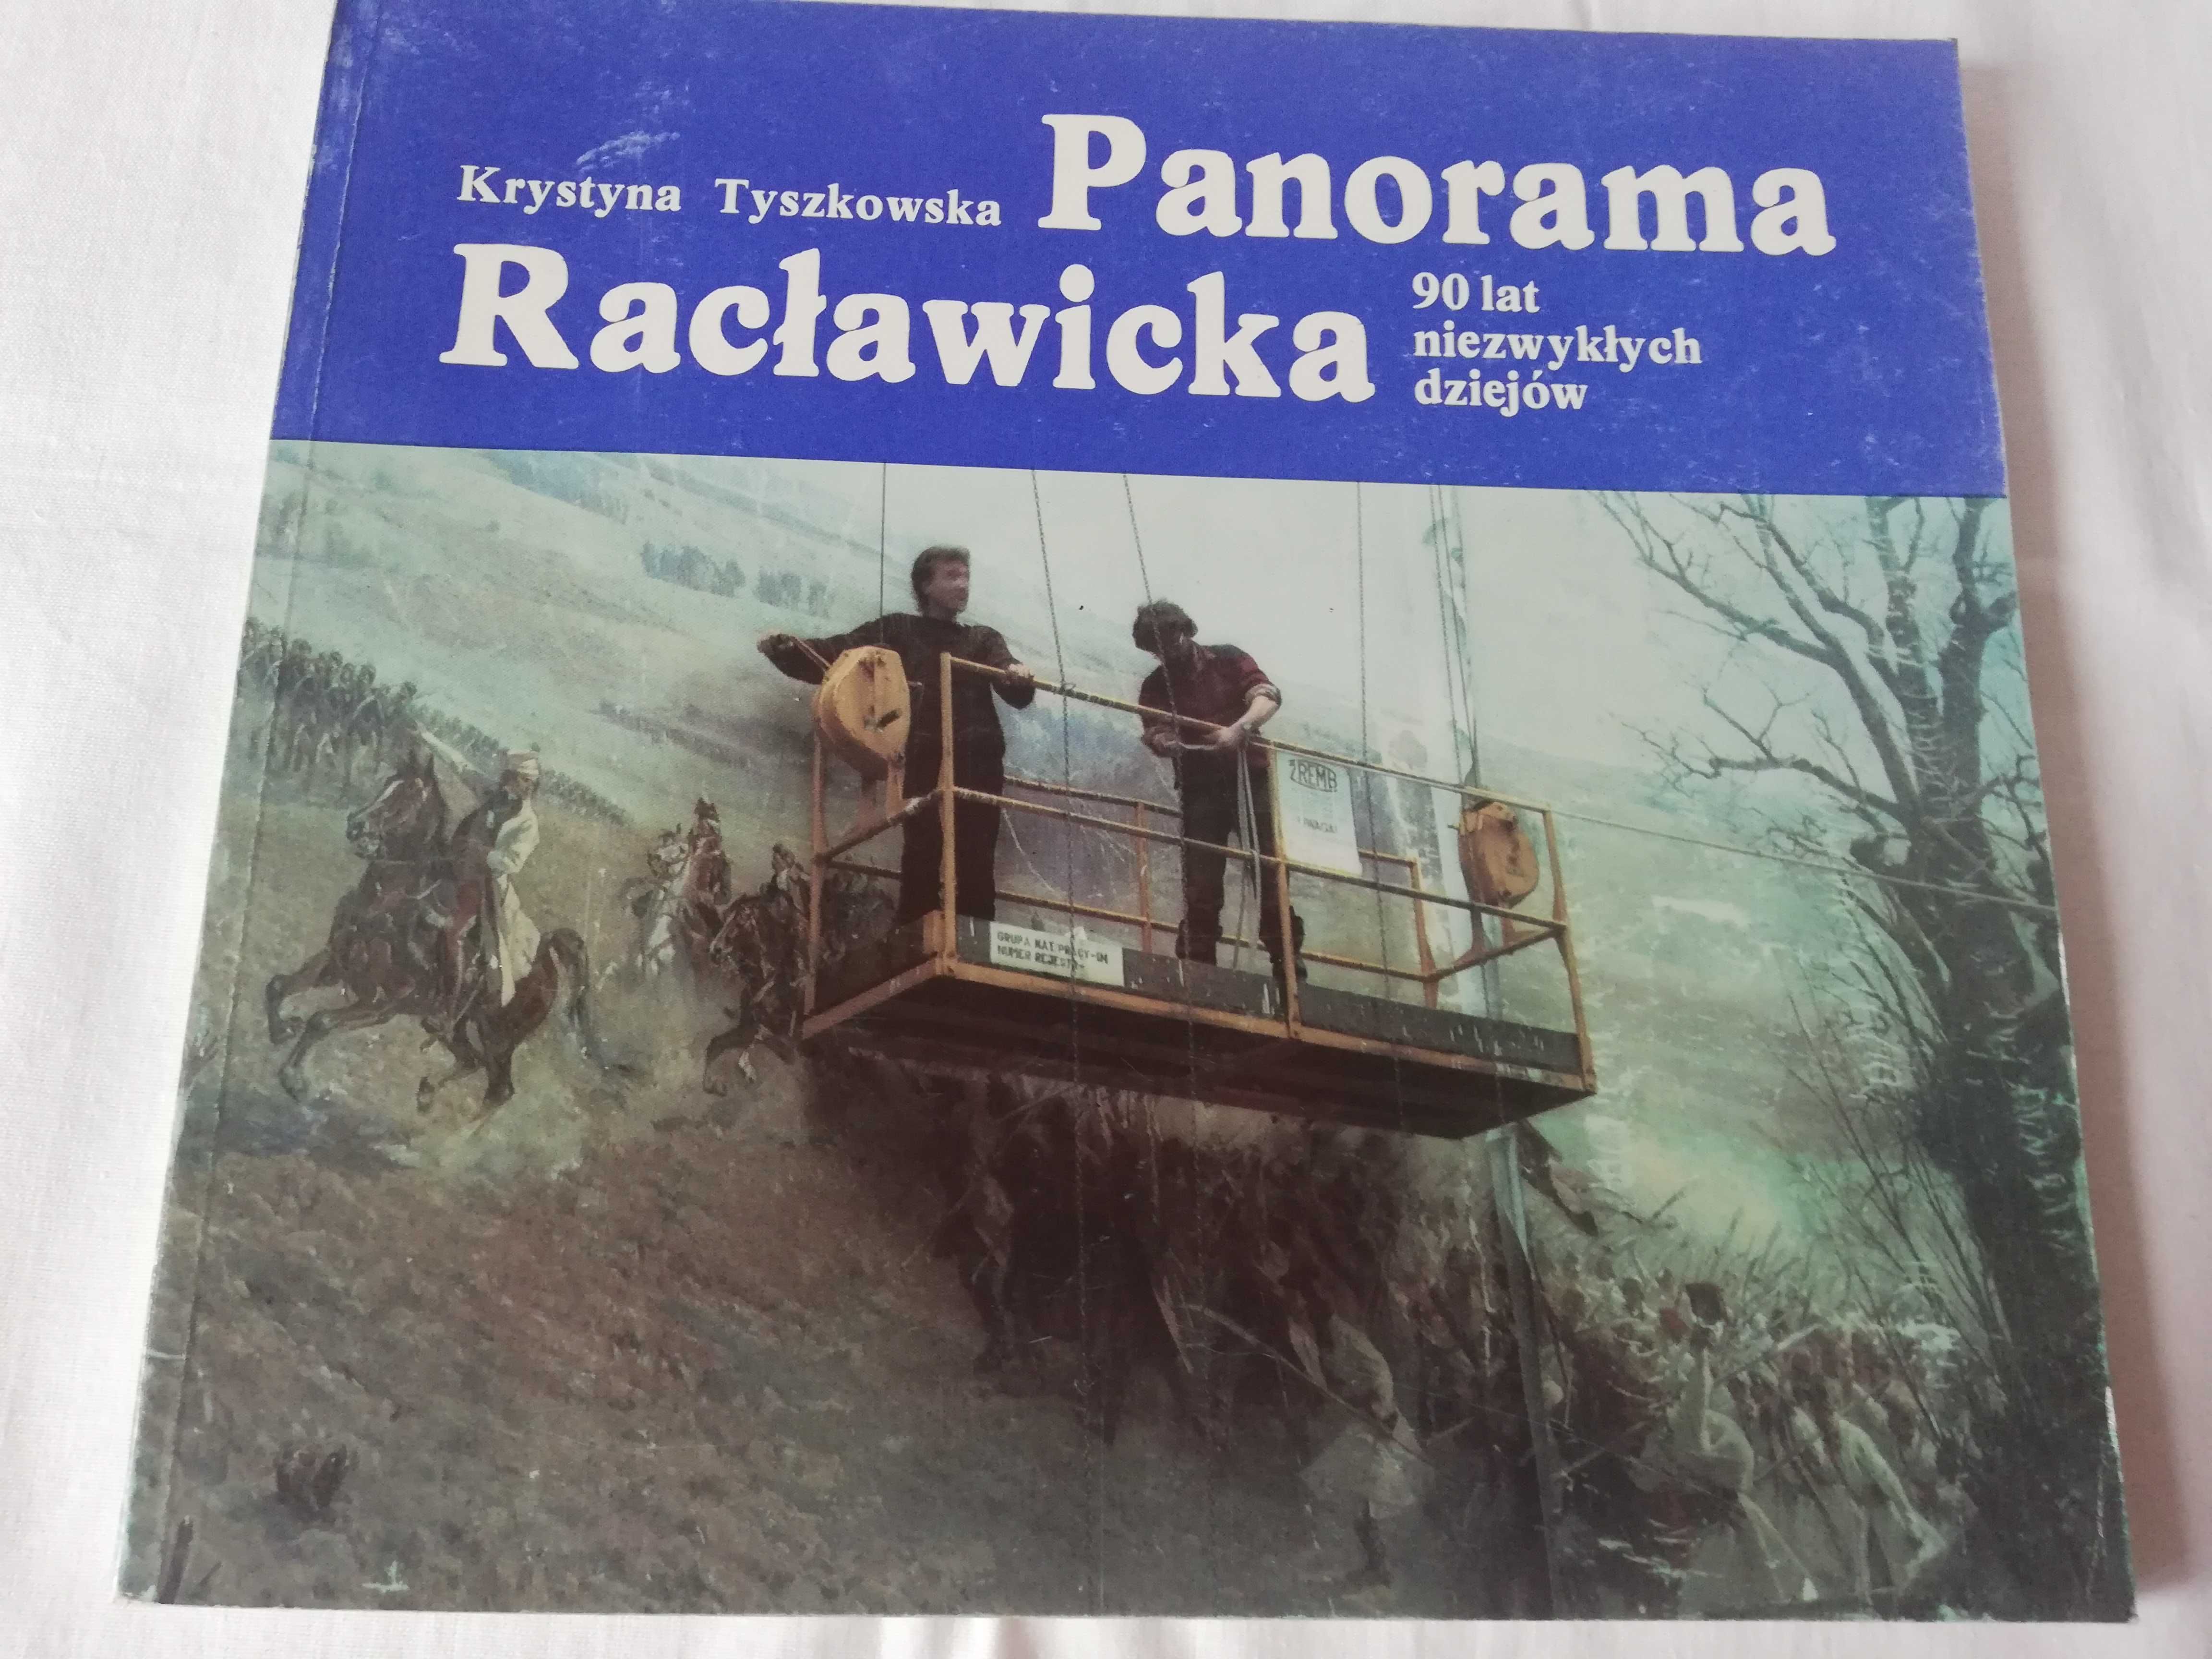 Panorama Racławicka - Krystyna Tyszkowska - 1986 rok